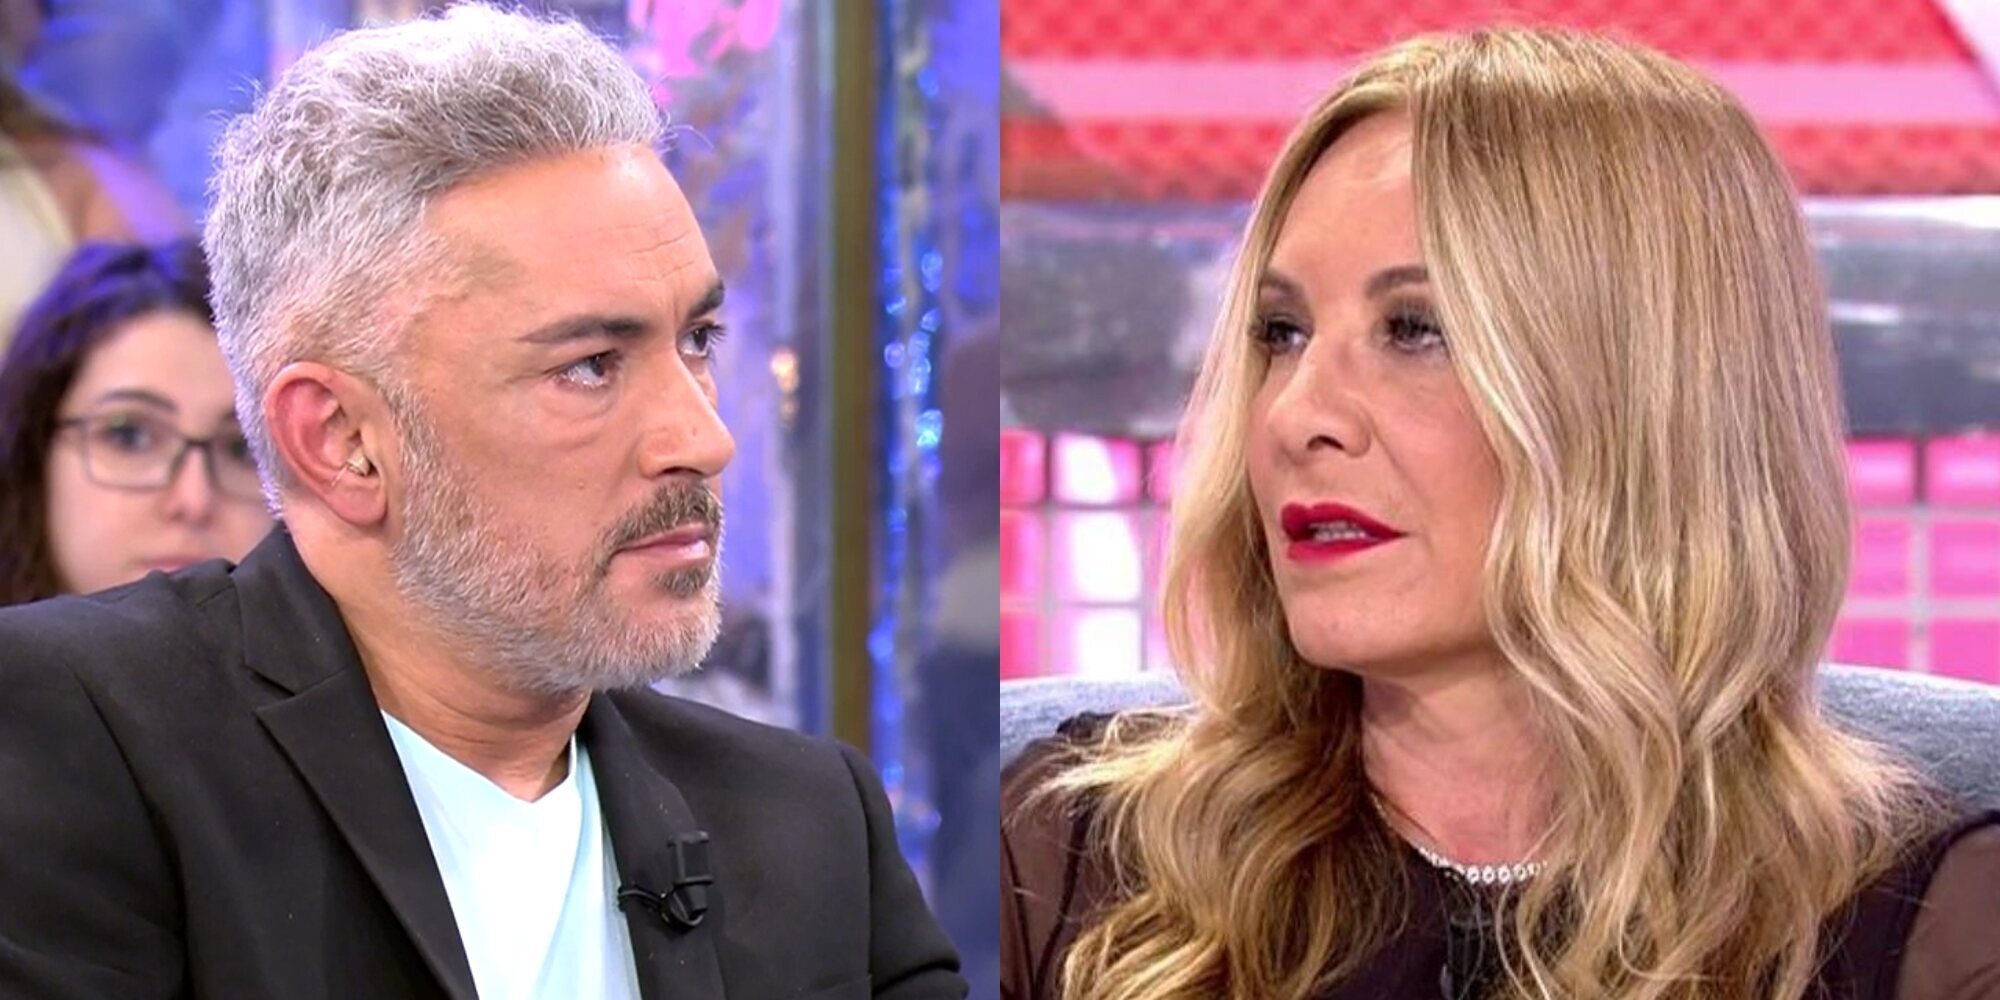 Estalla la guerra entre Kiko Hernández y Belén Rodríguez: "No volveré a mirarle a la cara nunca más"